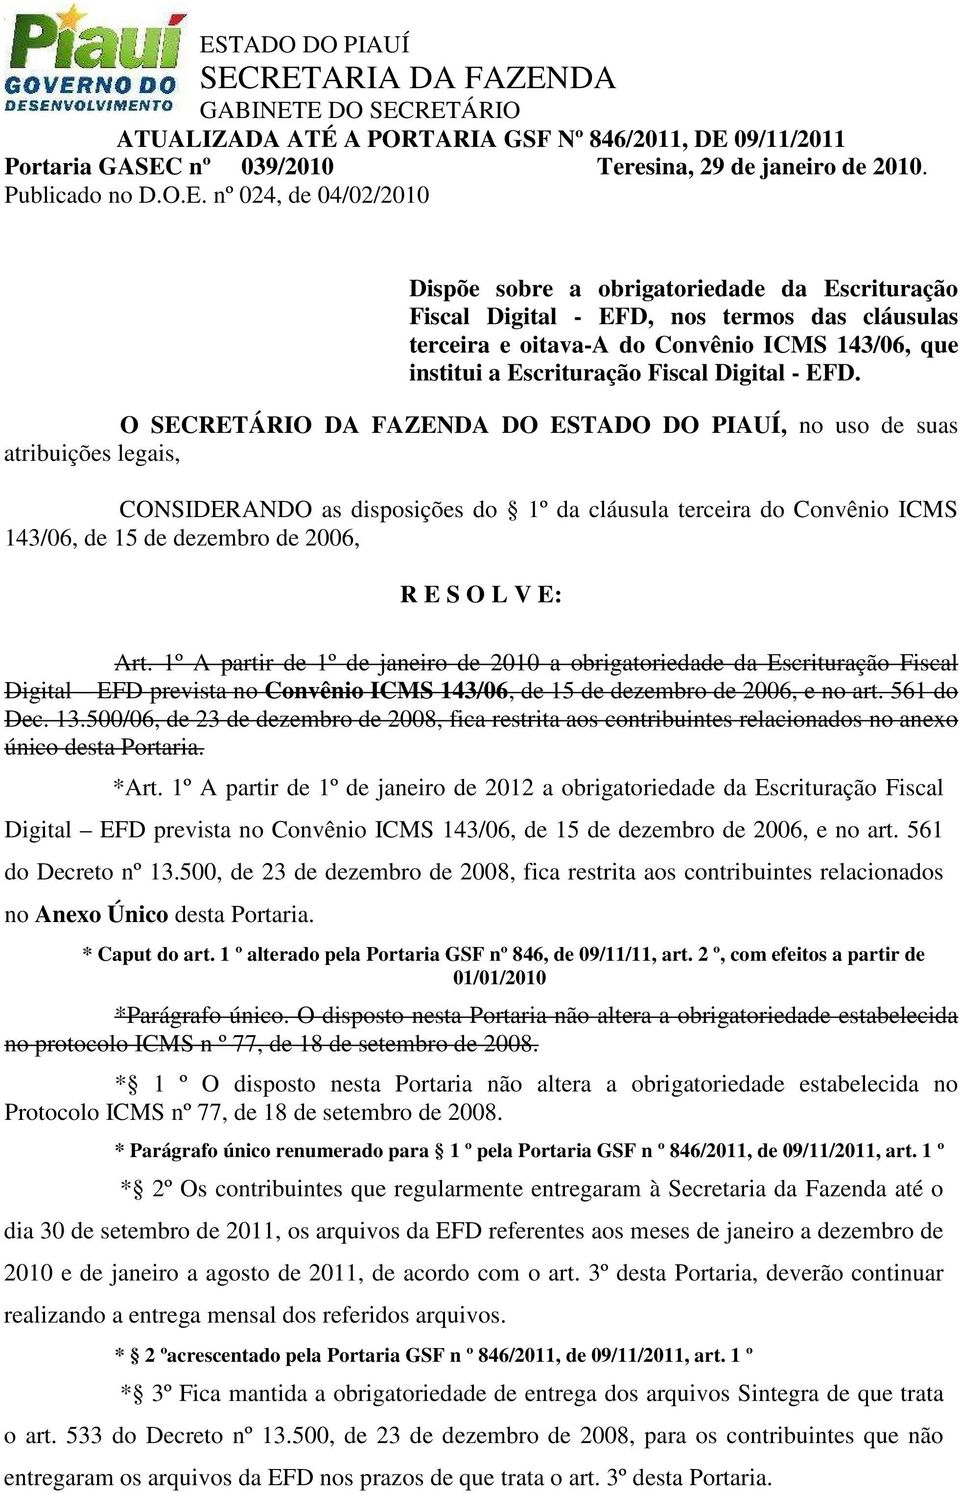 1º A partir de 1º de janeiro de 2010 a obrigatoriedade da Escrituração Fiscal Digital EFD prevista no Convênio ICMS 143/06, de 15 de dezembro de 2006, e no art. 561 do Dec. 13.